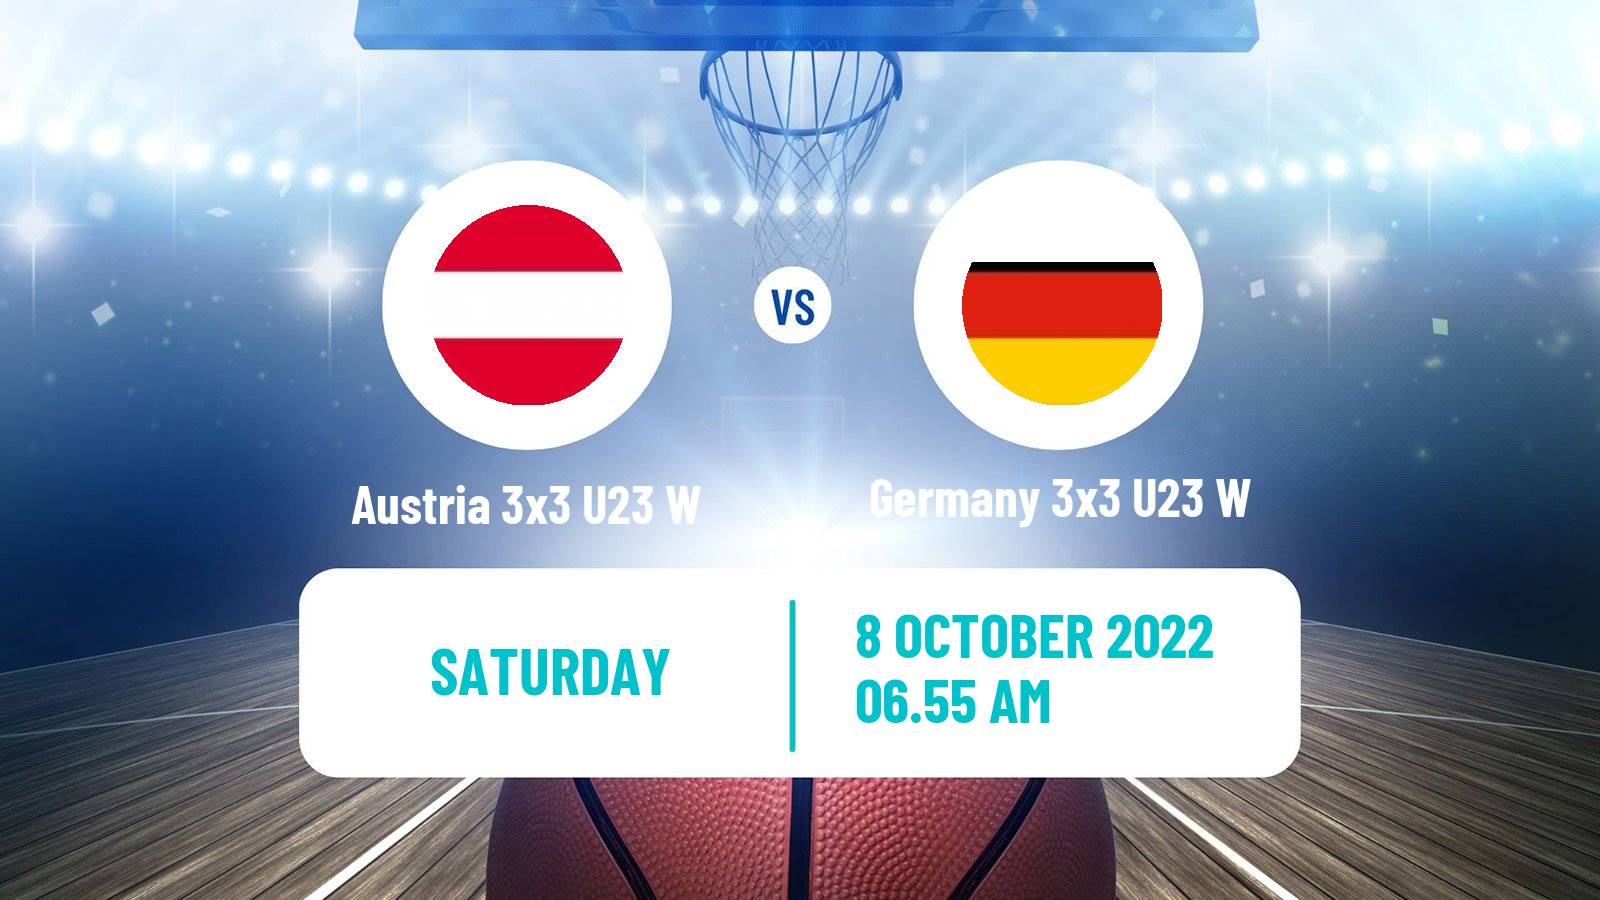 Basketball World Cup Basketball 3x3 U23 Women Austria 3x3 U23 W - Germany 3x3 U23 W